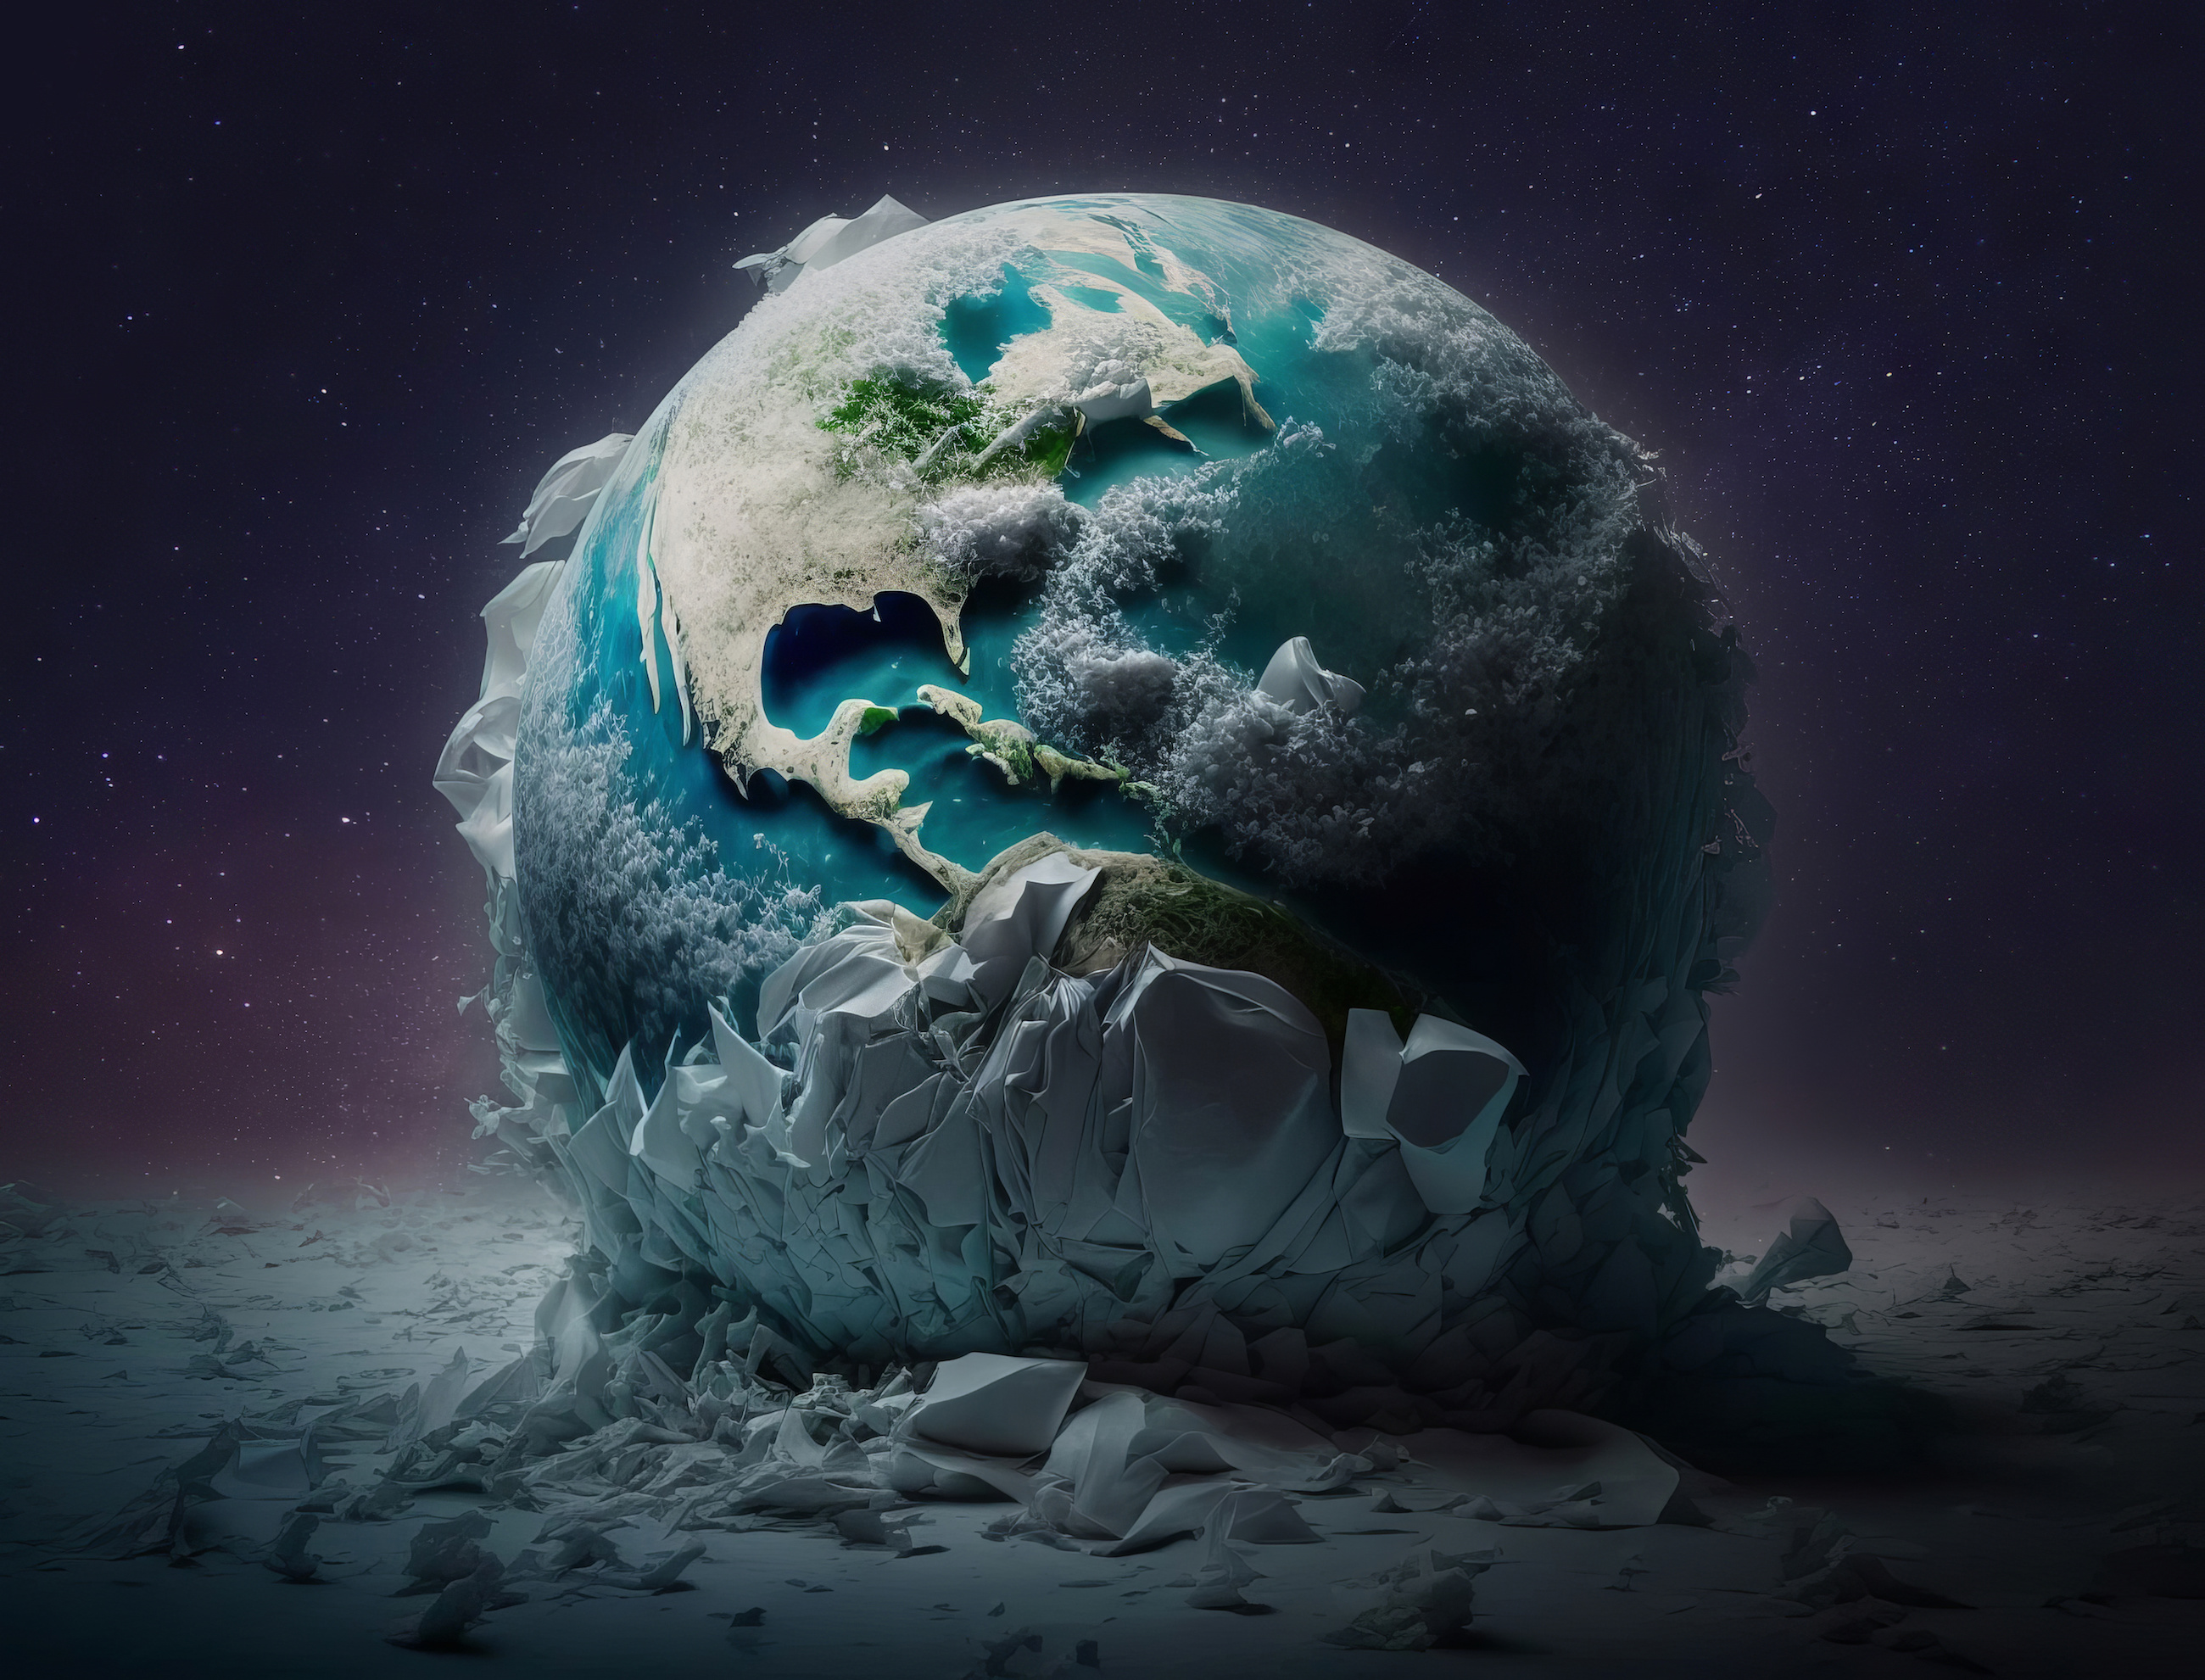 Il y a 700 millions d'années, la Terre connaissait plusieurs épisodes de glaciation extrême. © karenfoleyphoto, Adobe Stock